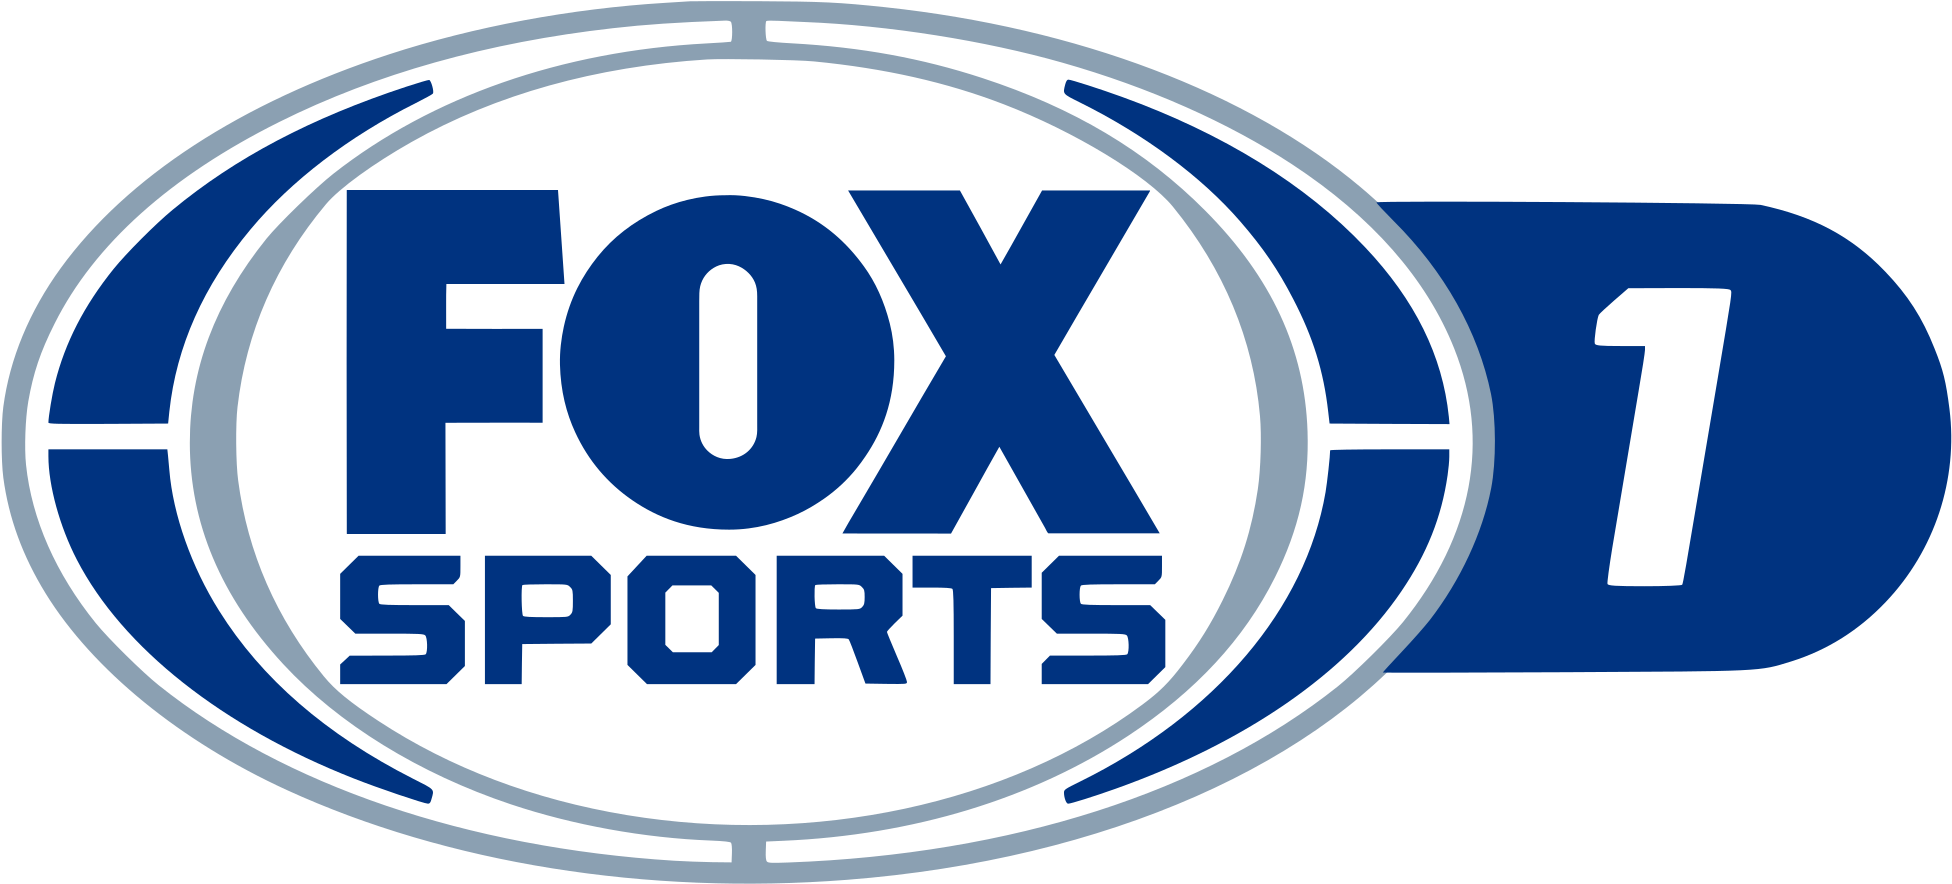 Фокс спорт. Телеканал Fox. 3 Sport Телеканал. Логотип телеканала Фокс. Sport3.TV.